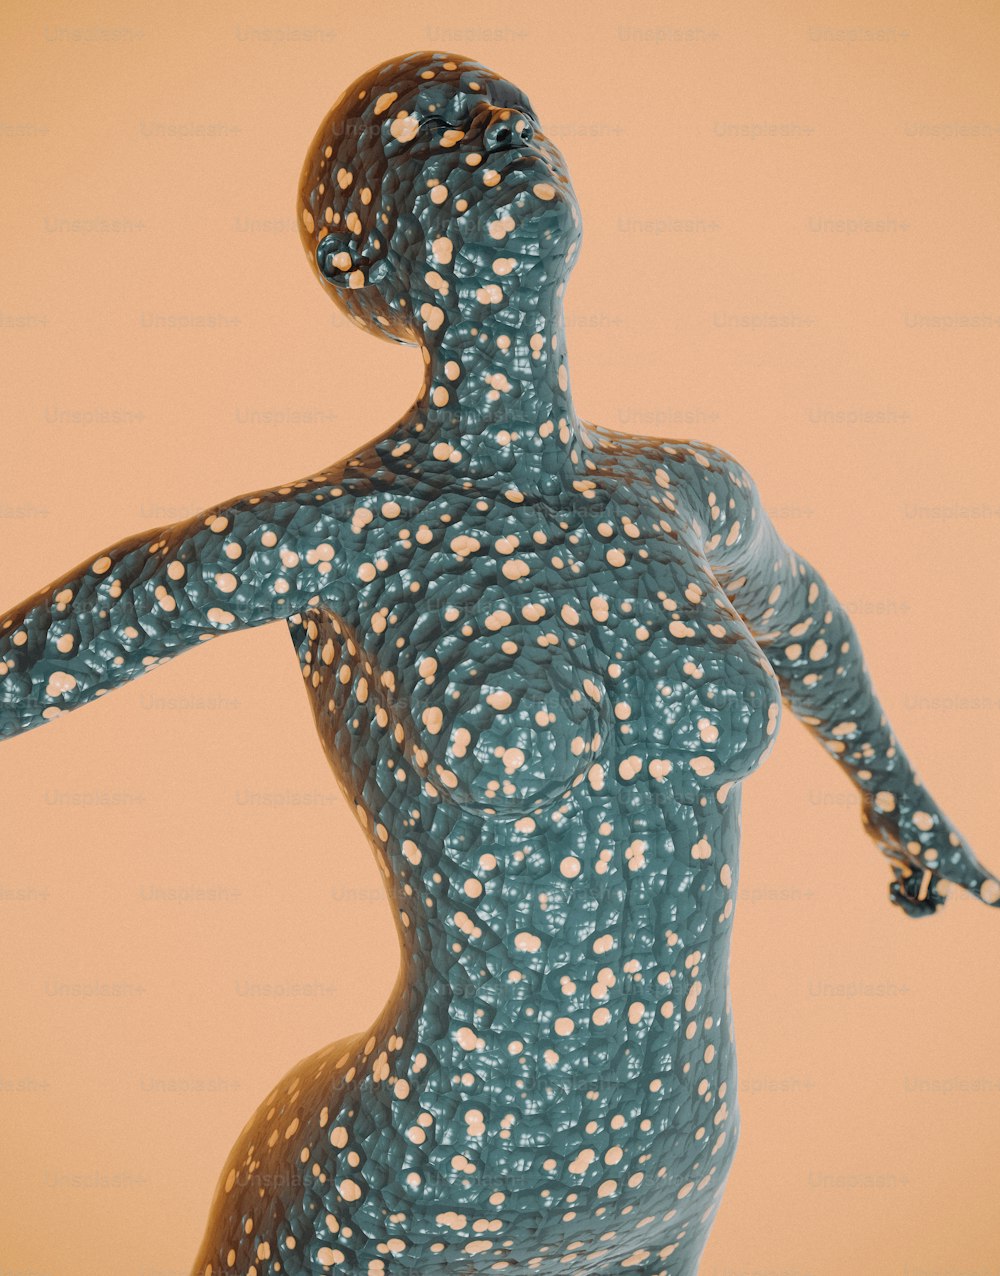 Una escultura de una mujer con puntos en su cuerpo